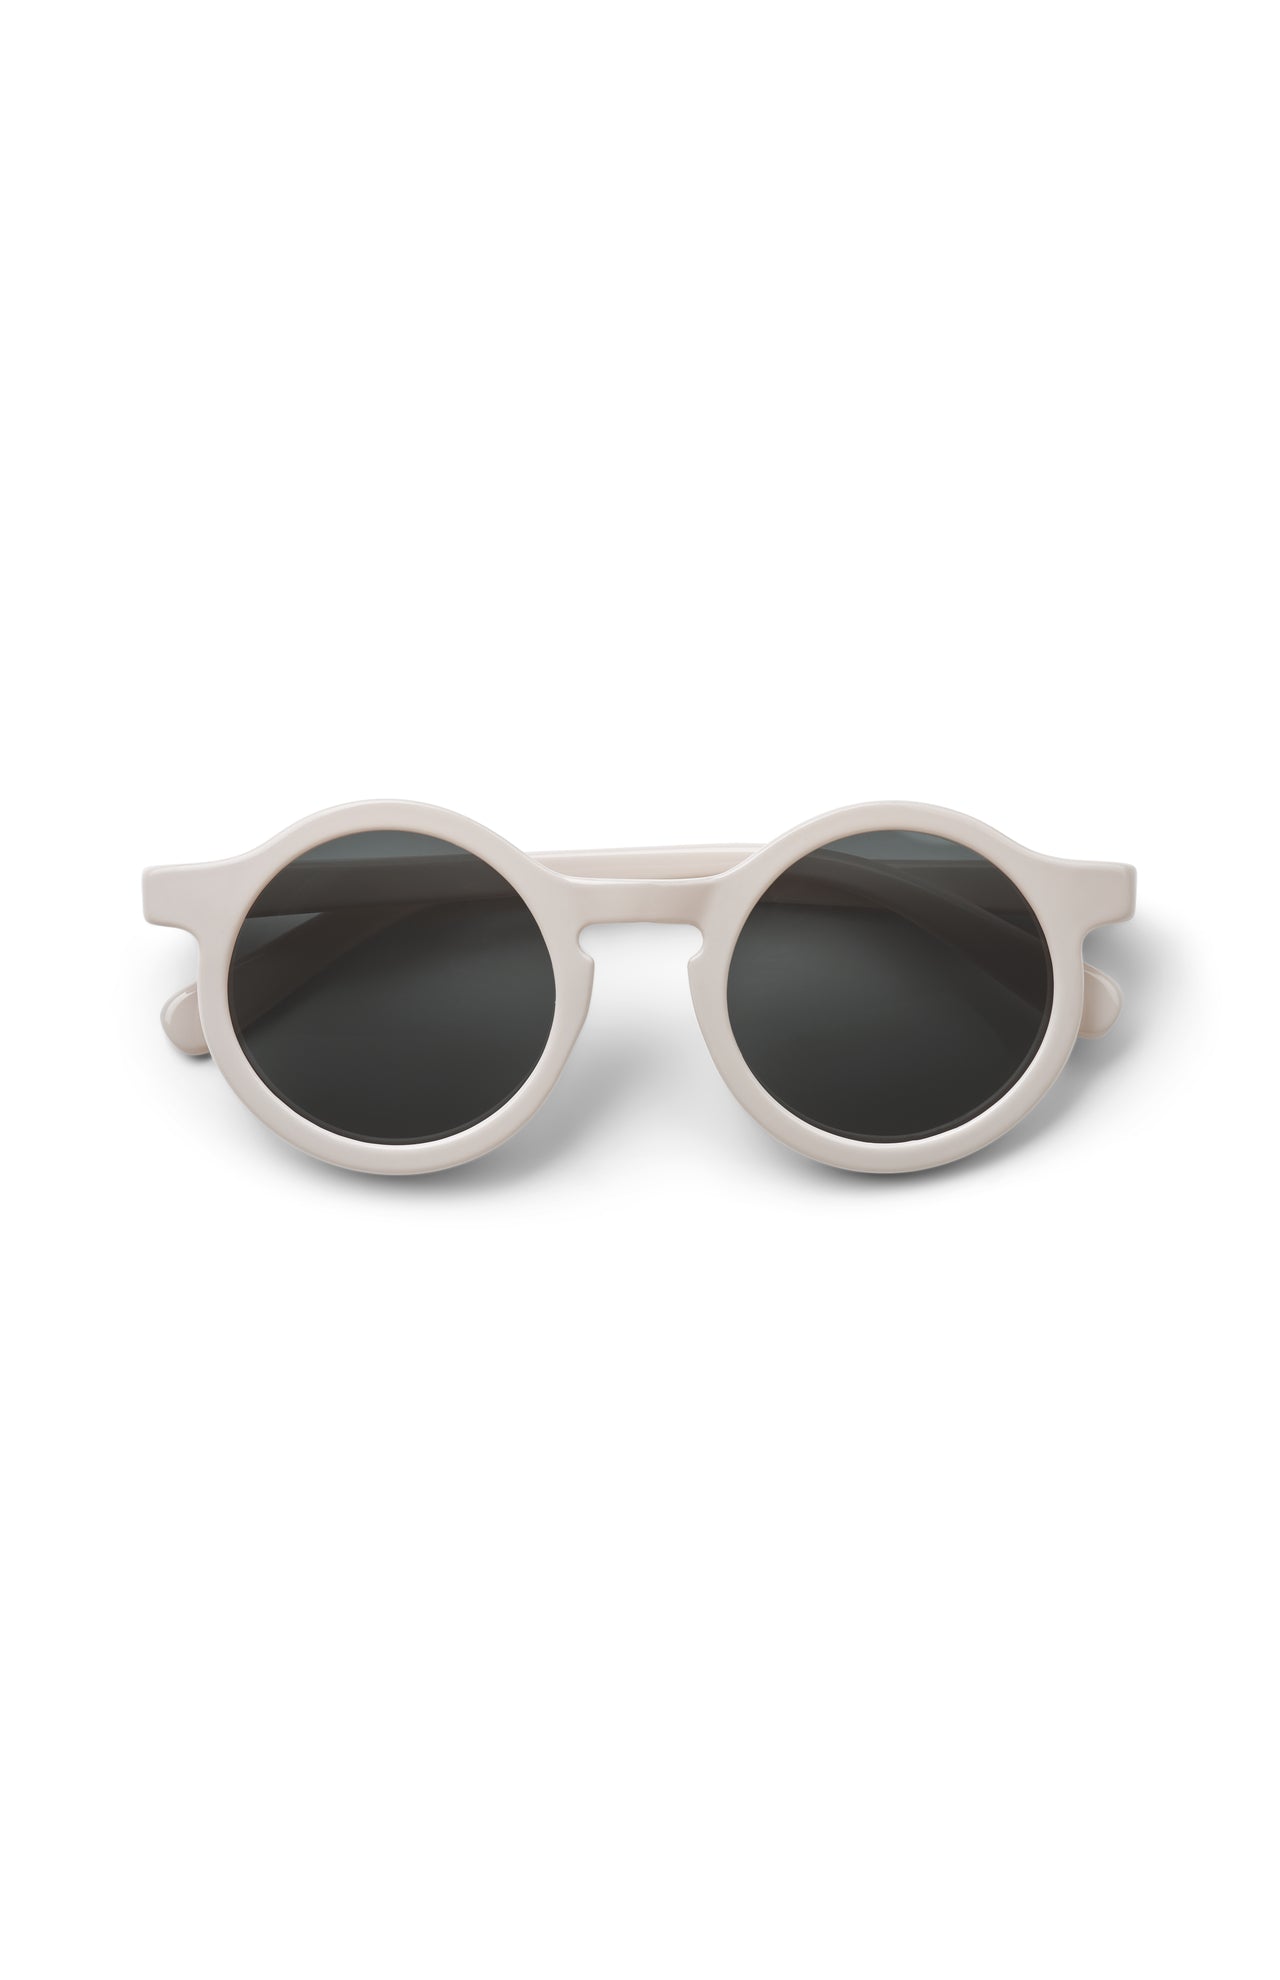 Liewood Sonnenbrille, Kleinkinder 1 bis 3 Jahre, verschiedene Farben, UV-Schutz, kindgerechtes Design, für sonnige Tage